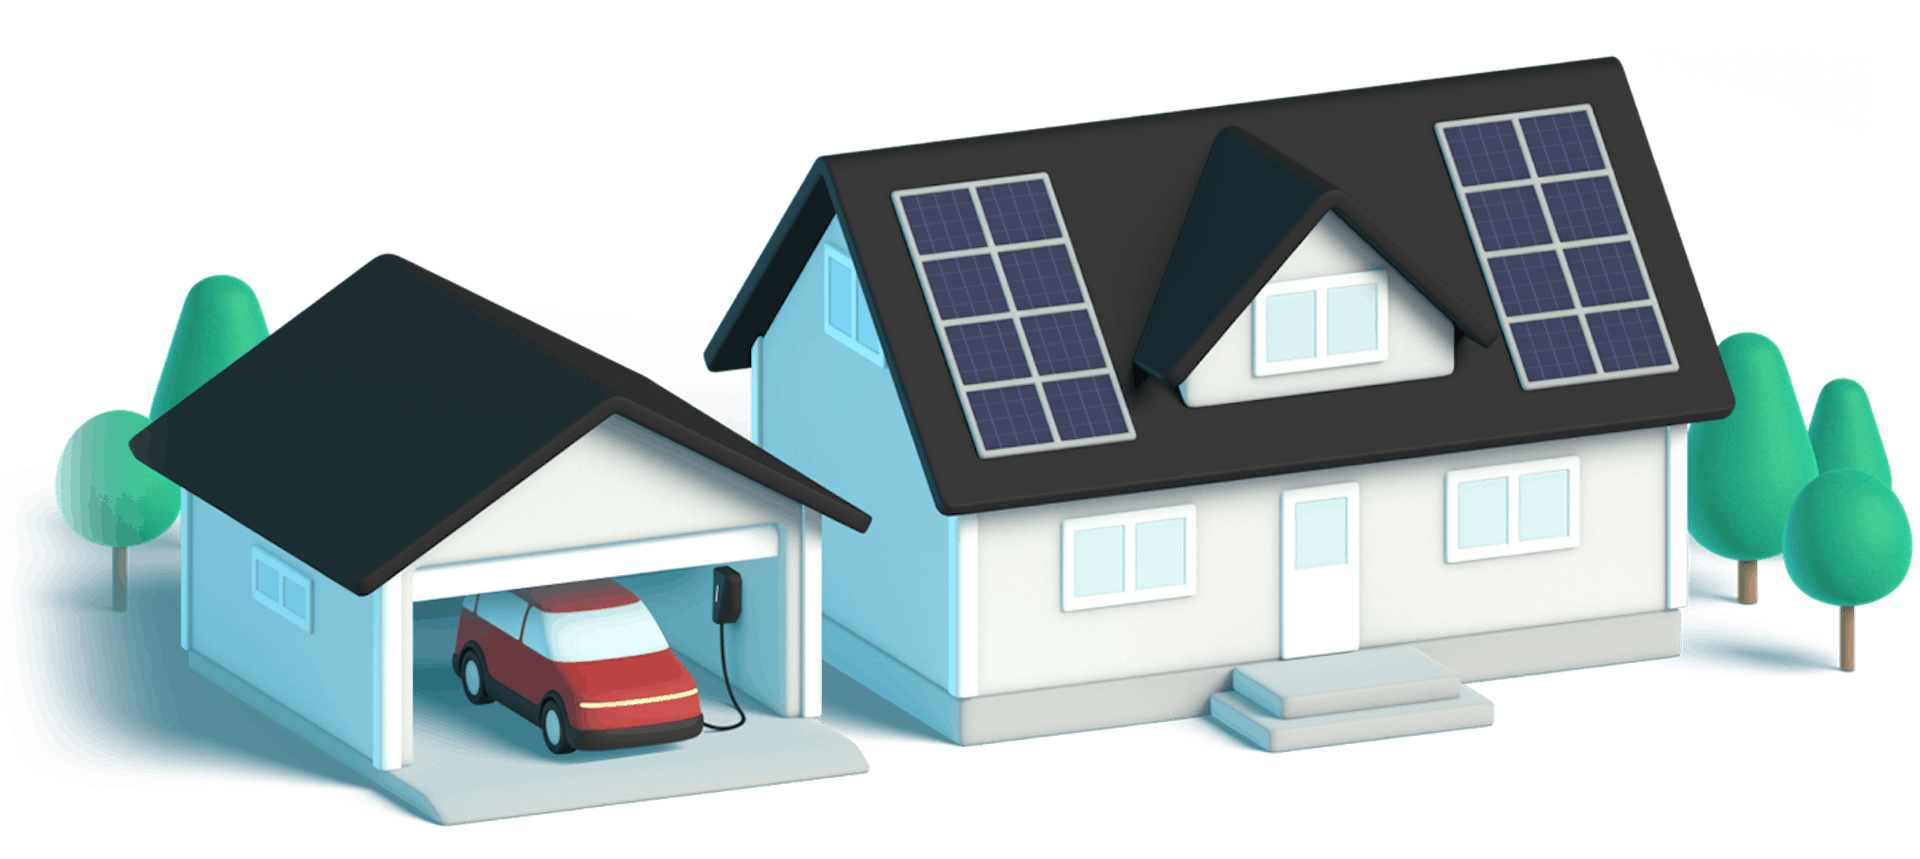 Smart Energy Deal V2 - House illustration (mobile)